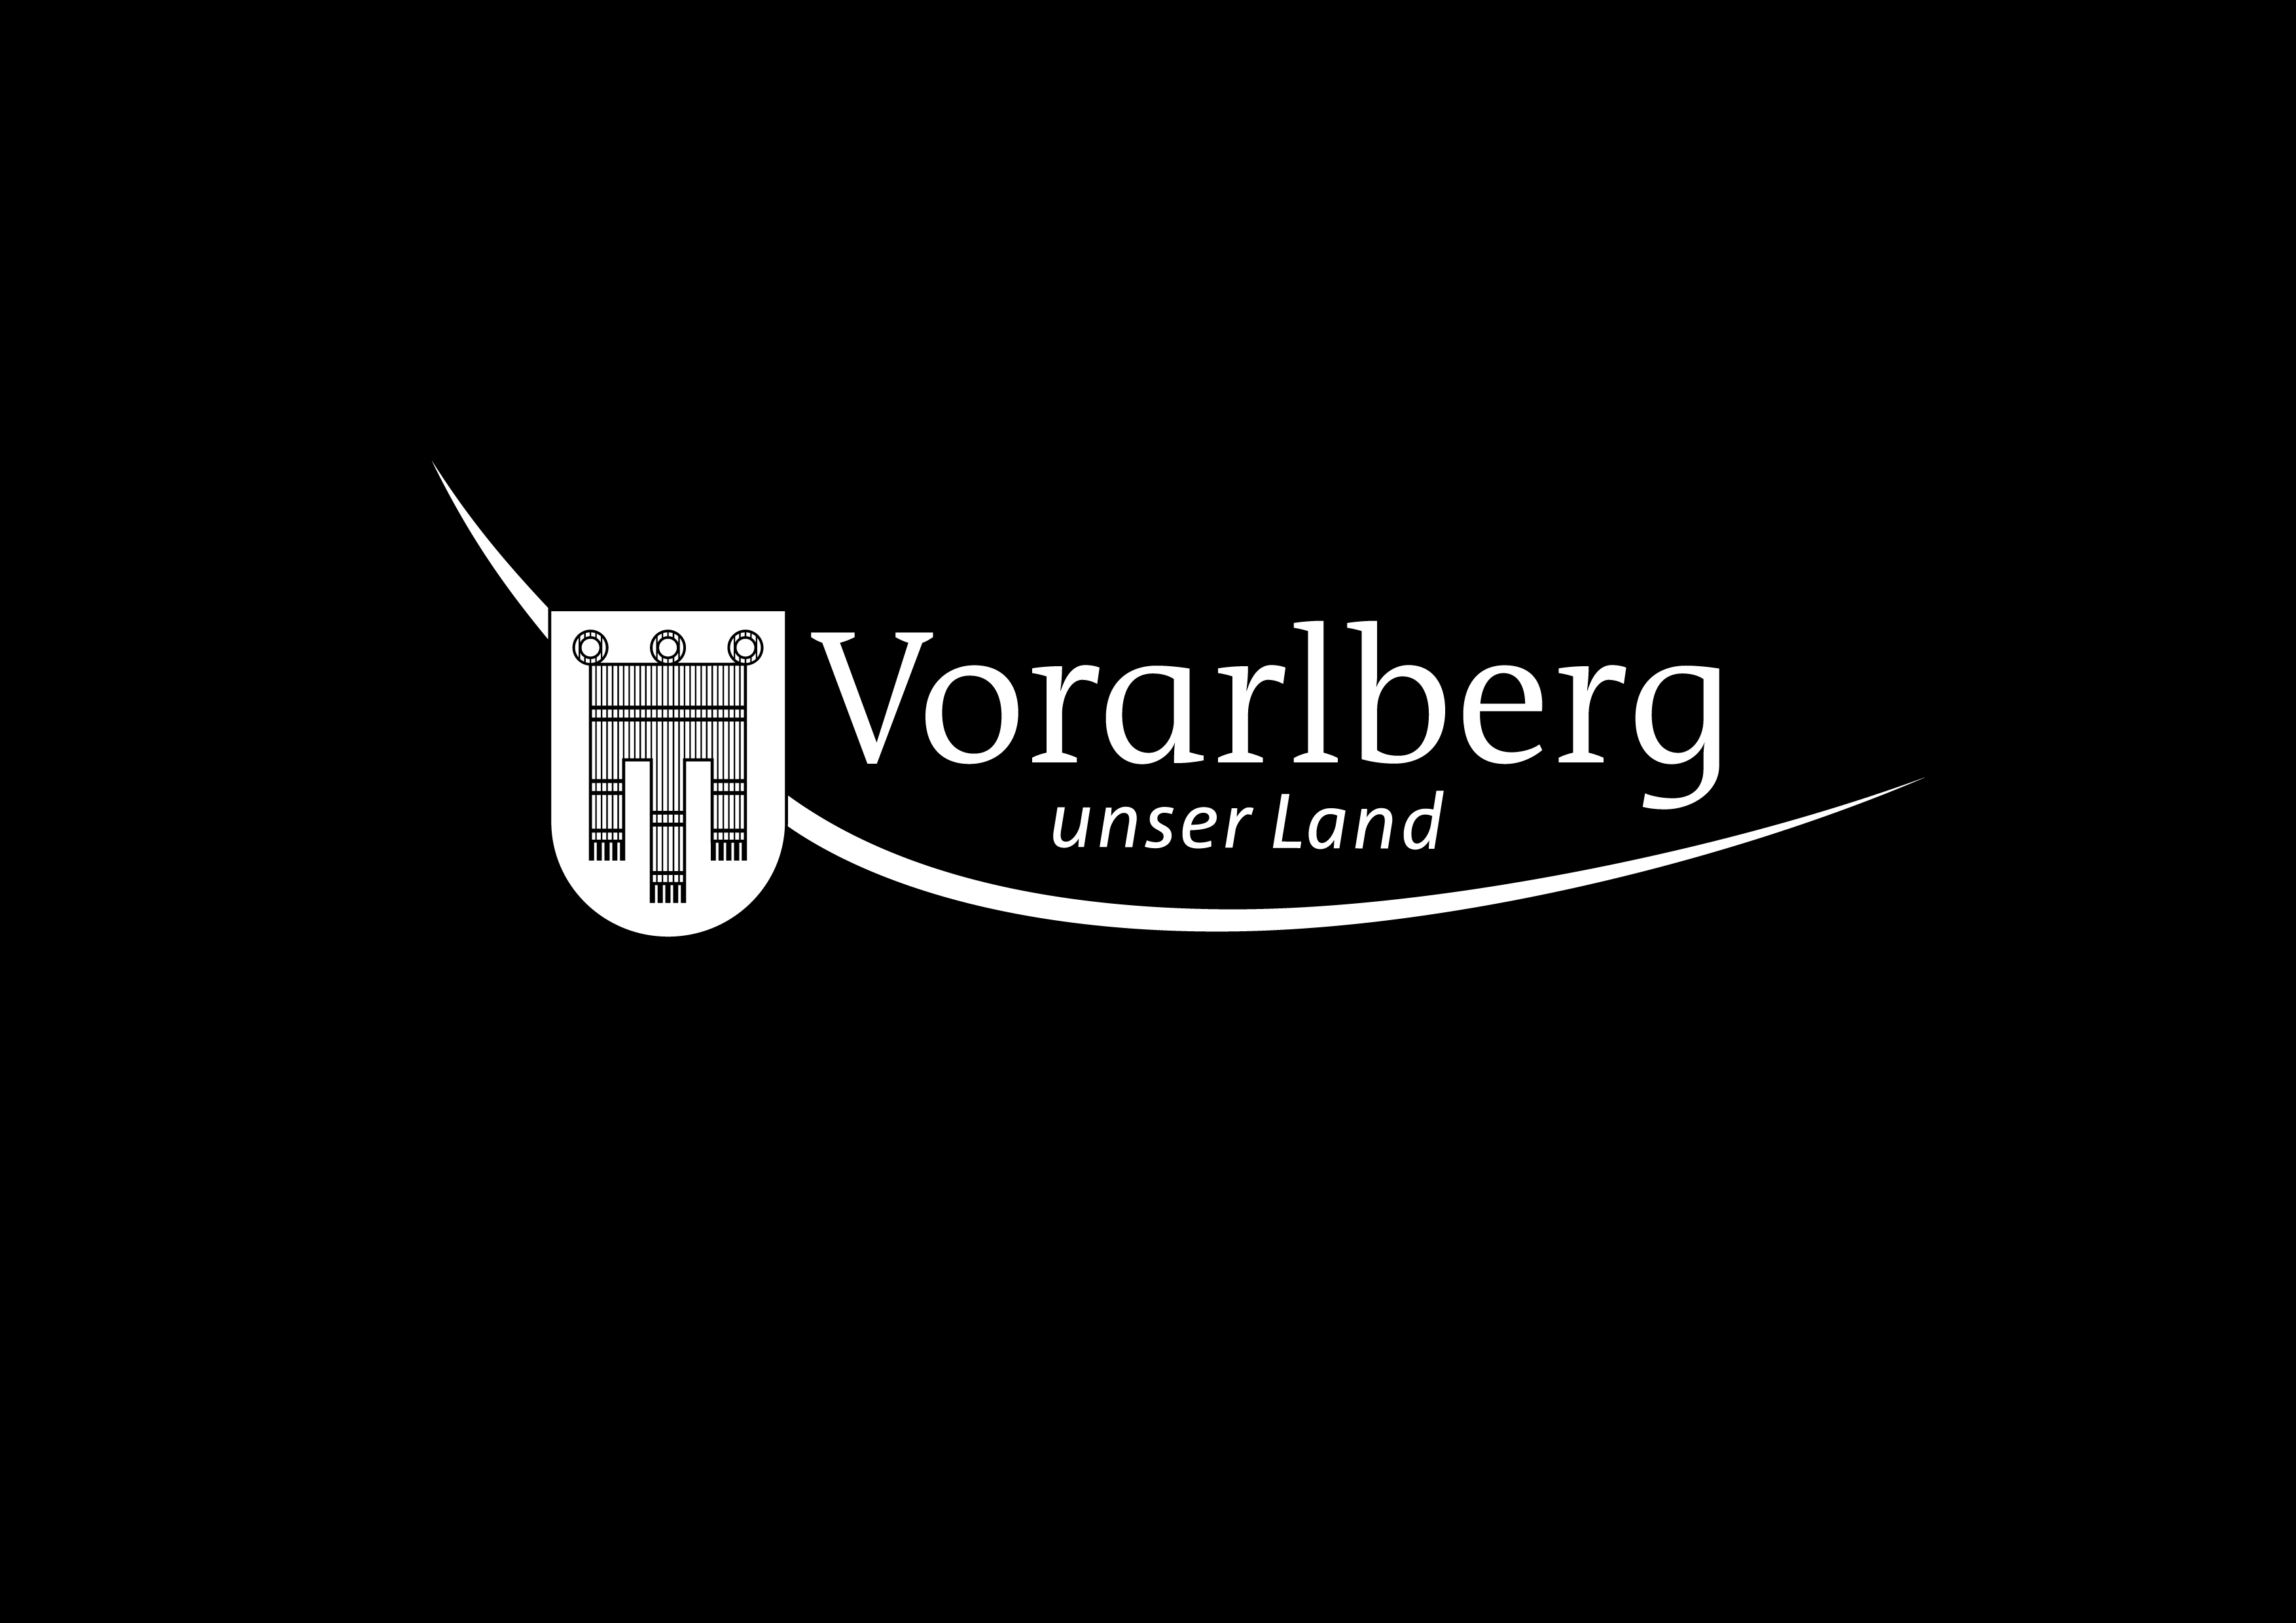 VorarlbergLogo